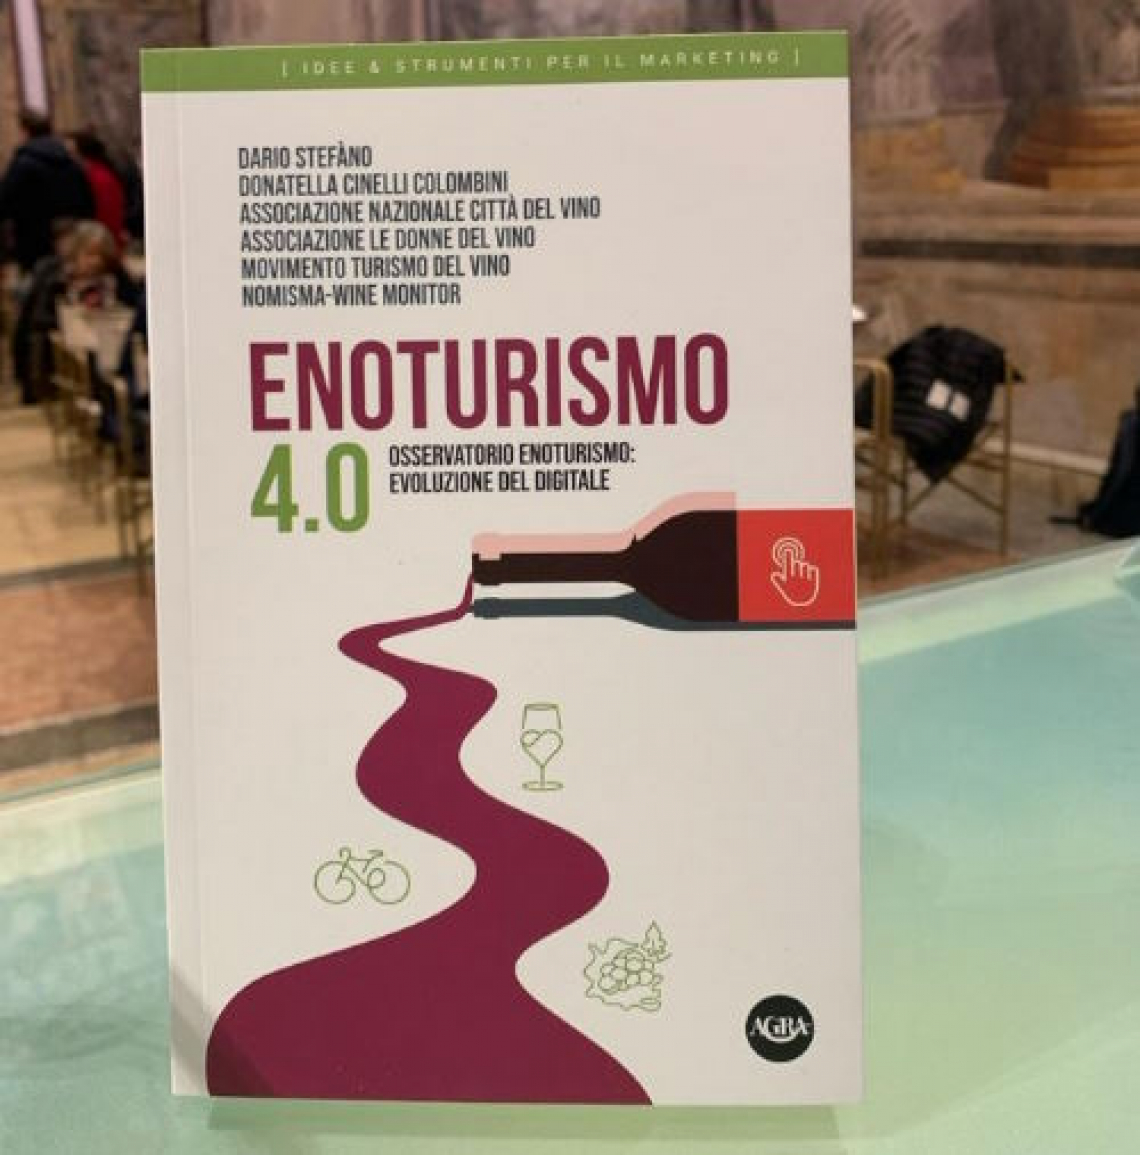 Enoturismo 4.0: il più completo manuale sul turismo del vino italiano